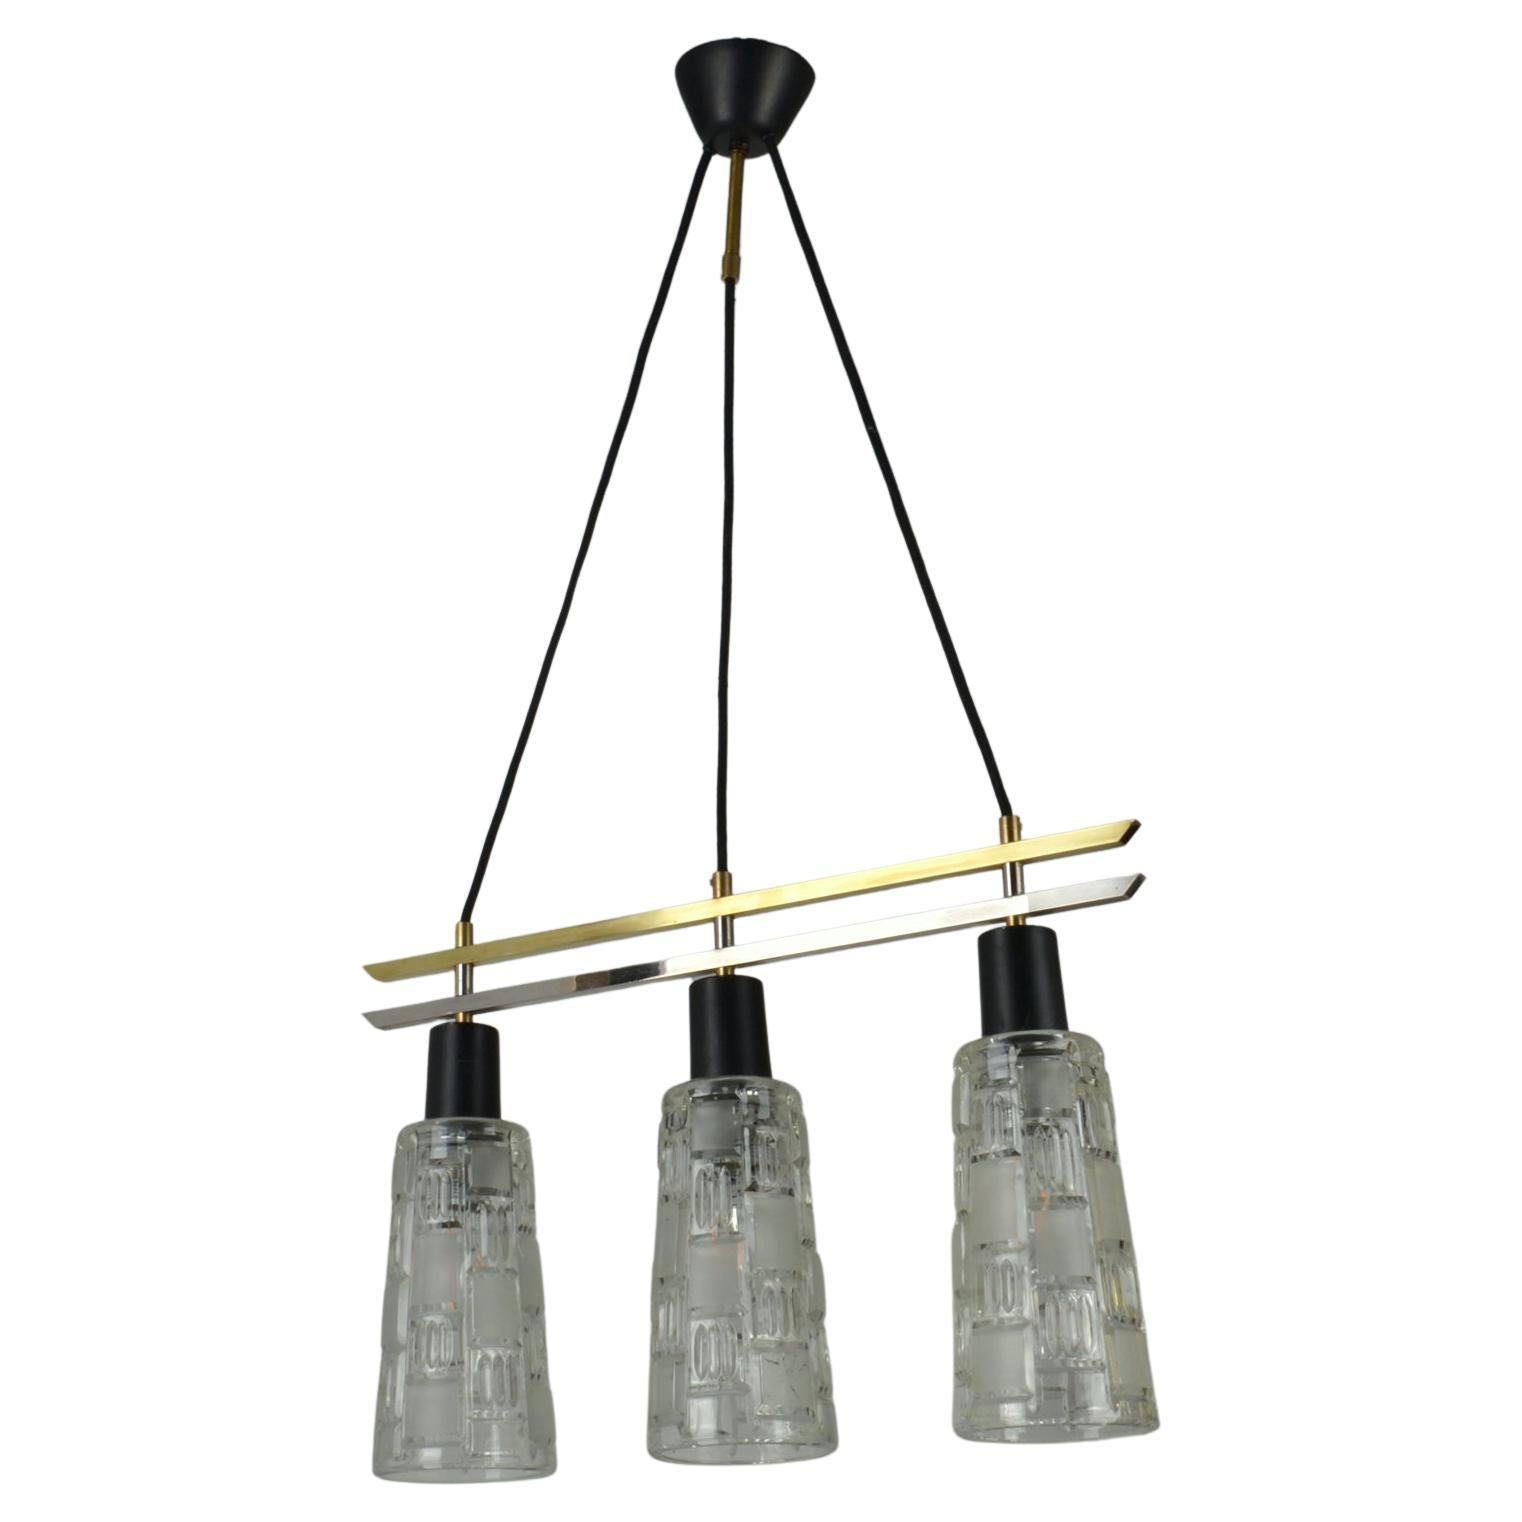 Der dreiflammige Glaslüster aus den 1960er Jahren hat einen Rahmen aus Messing, Chrom und schwarzem Metall, der die Lampenschirme miteinander verbindet. Die Reliefschirme sind teilweise matt geätzt, um das Licht zu streuen. 
Die Lampe macht sich gut